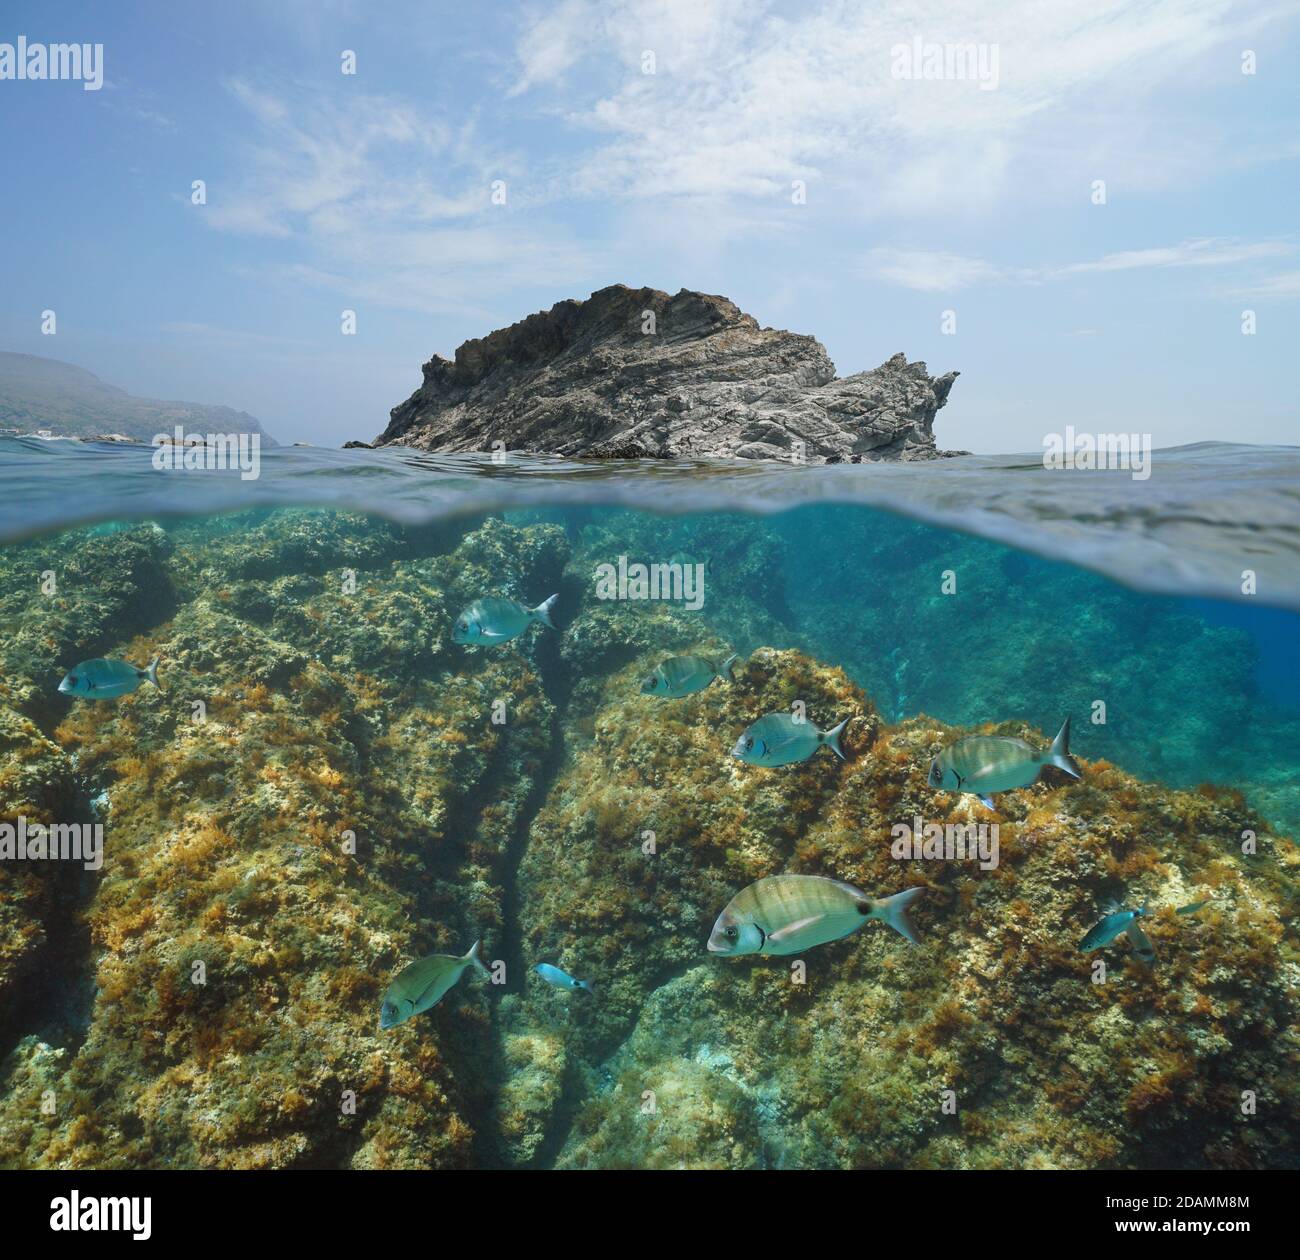 Mare di isola rocciosa con pesci sott'acqua, mare Mediterraneo, vista su e sotto la superficie dell'acqua, Spagna, Costa Brava, Colera, Catalogna Foto Stock